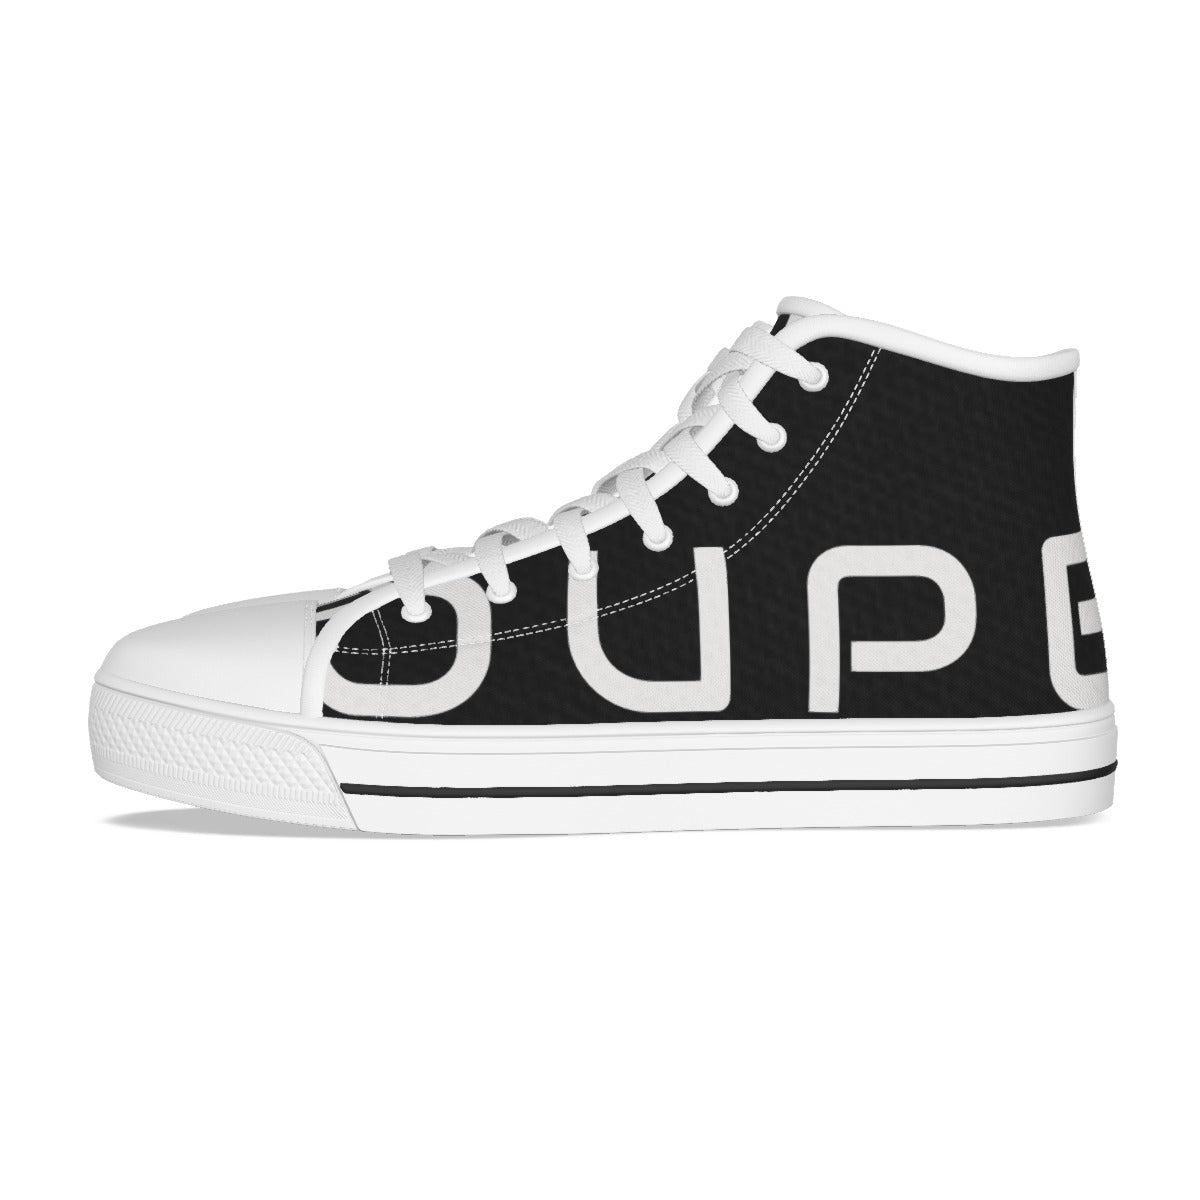 OUPE B/W Men's Canvas Shoes